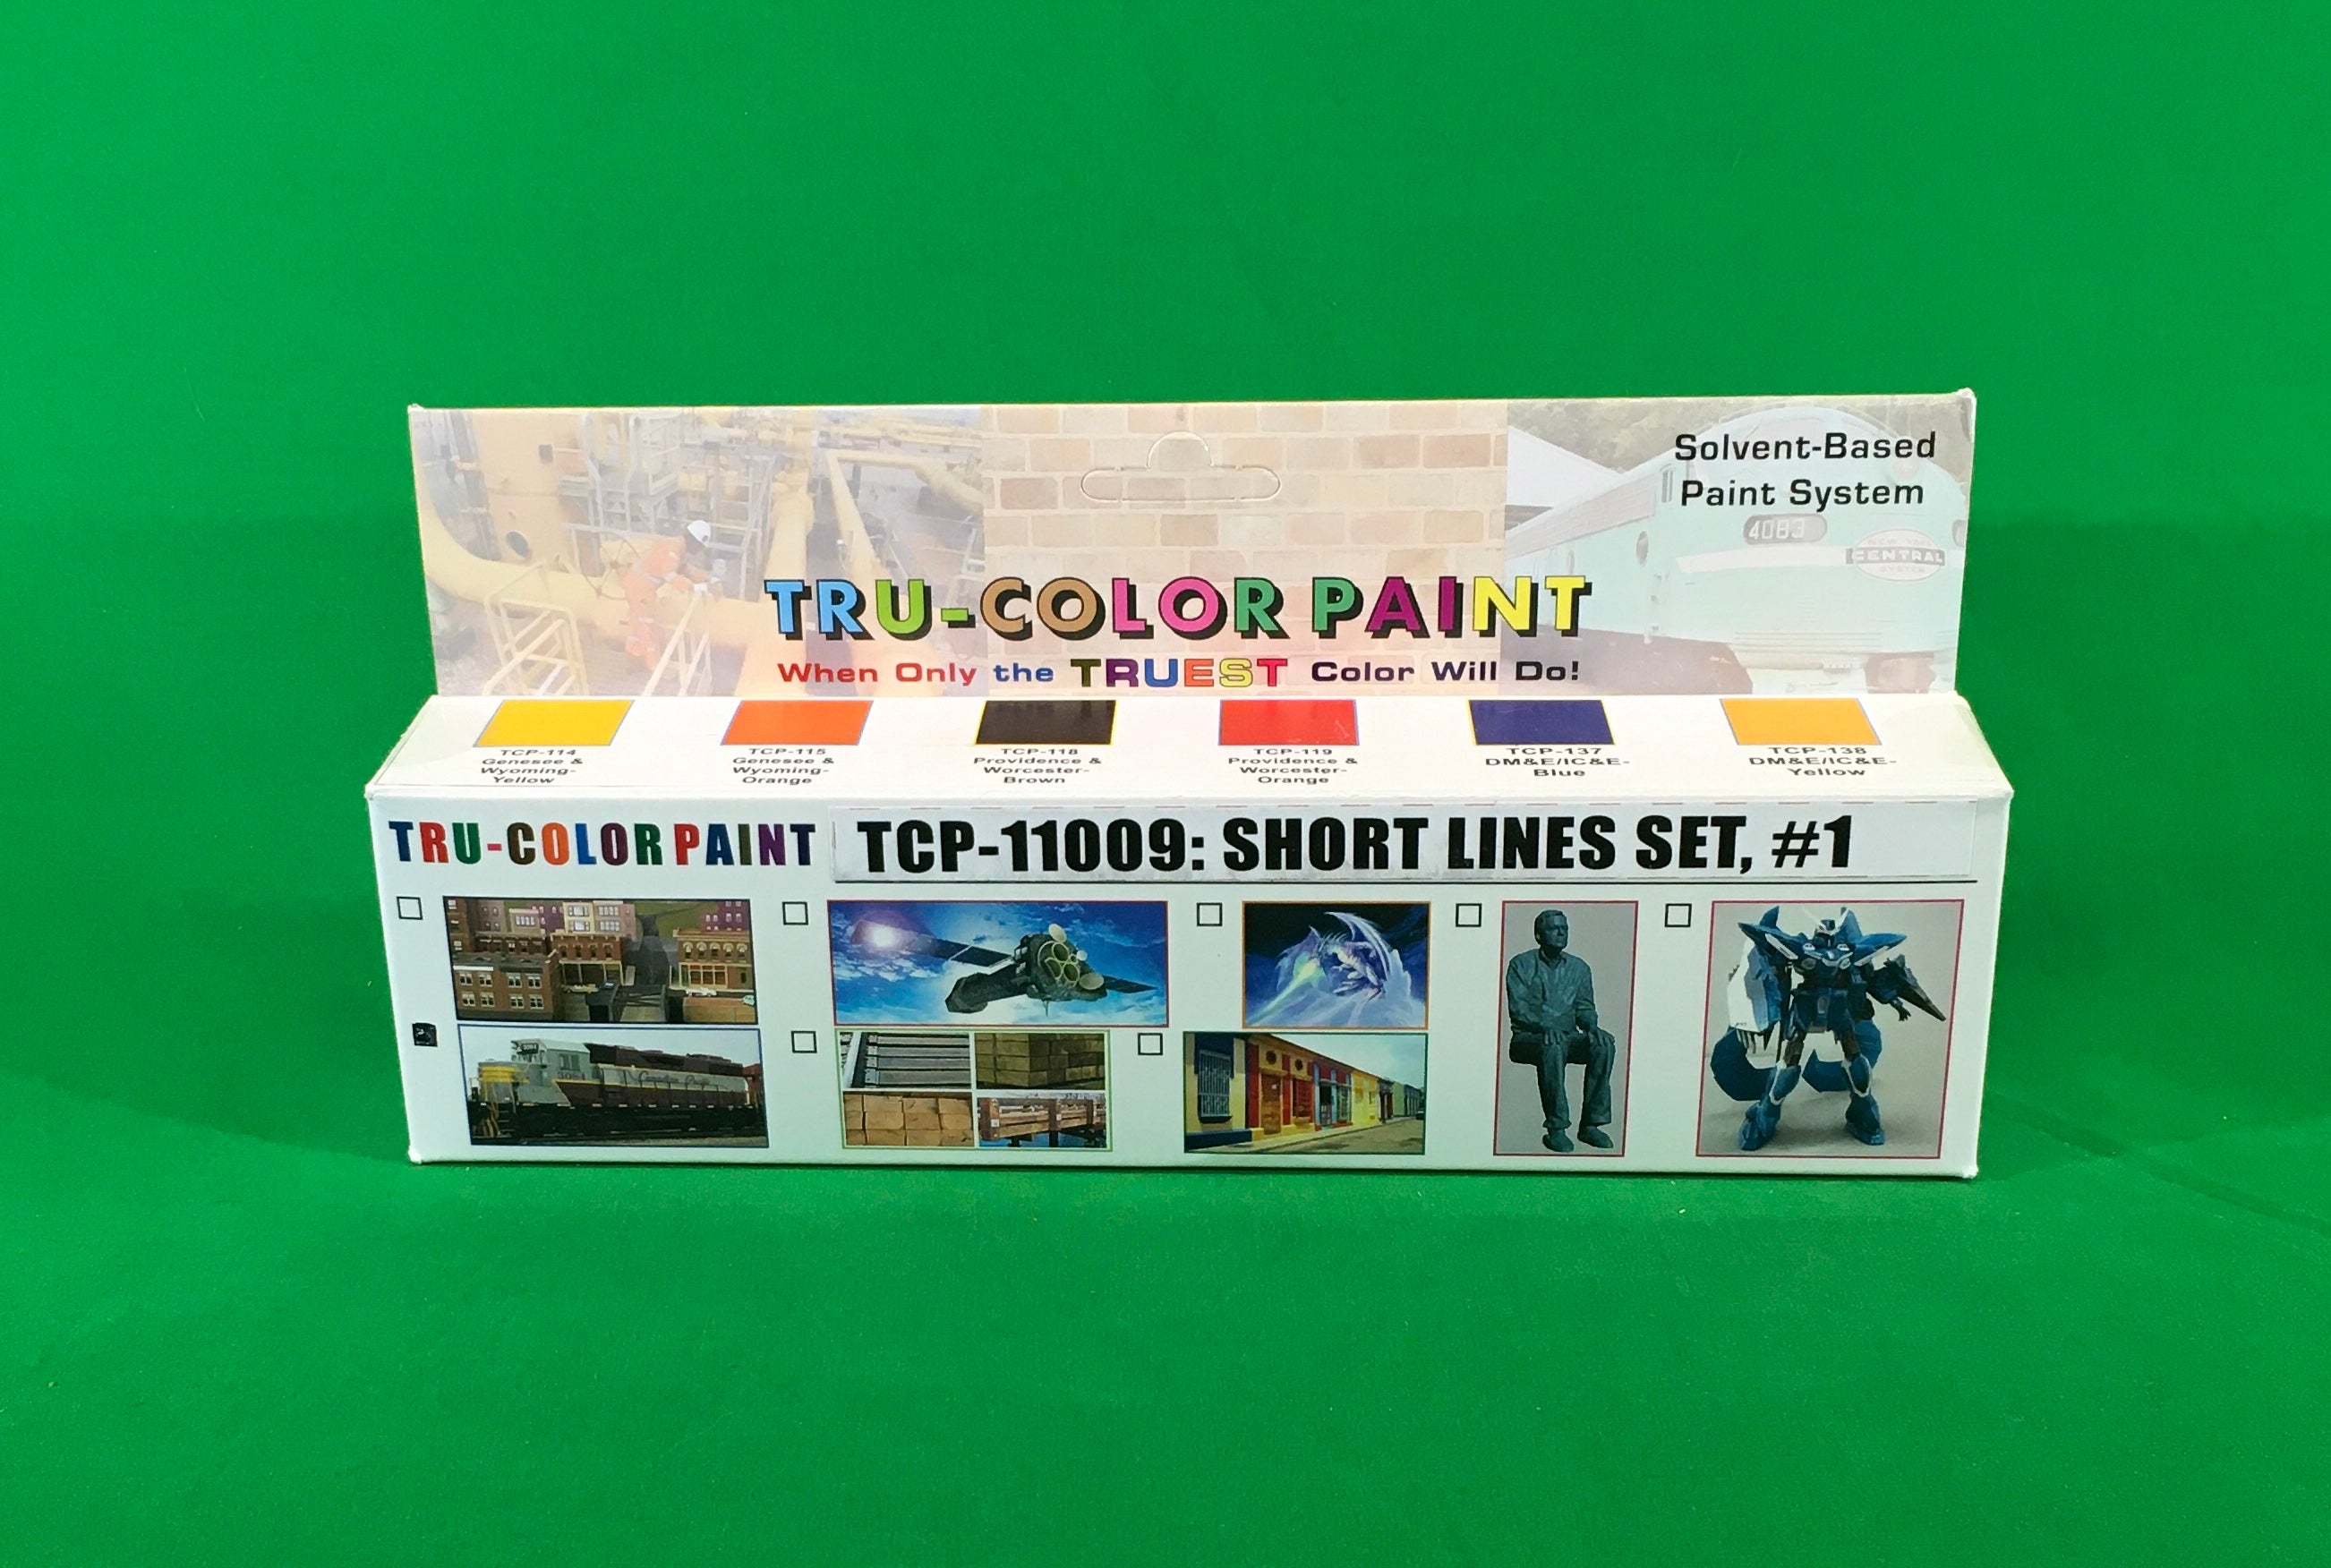 Tru-Color Paint - TCP-11009 - Short Lines Set #1 (Solvent-Based Paint)